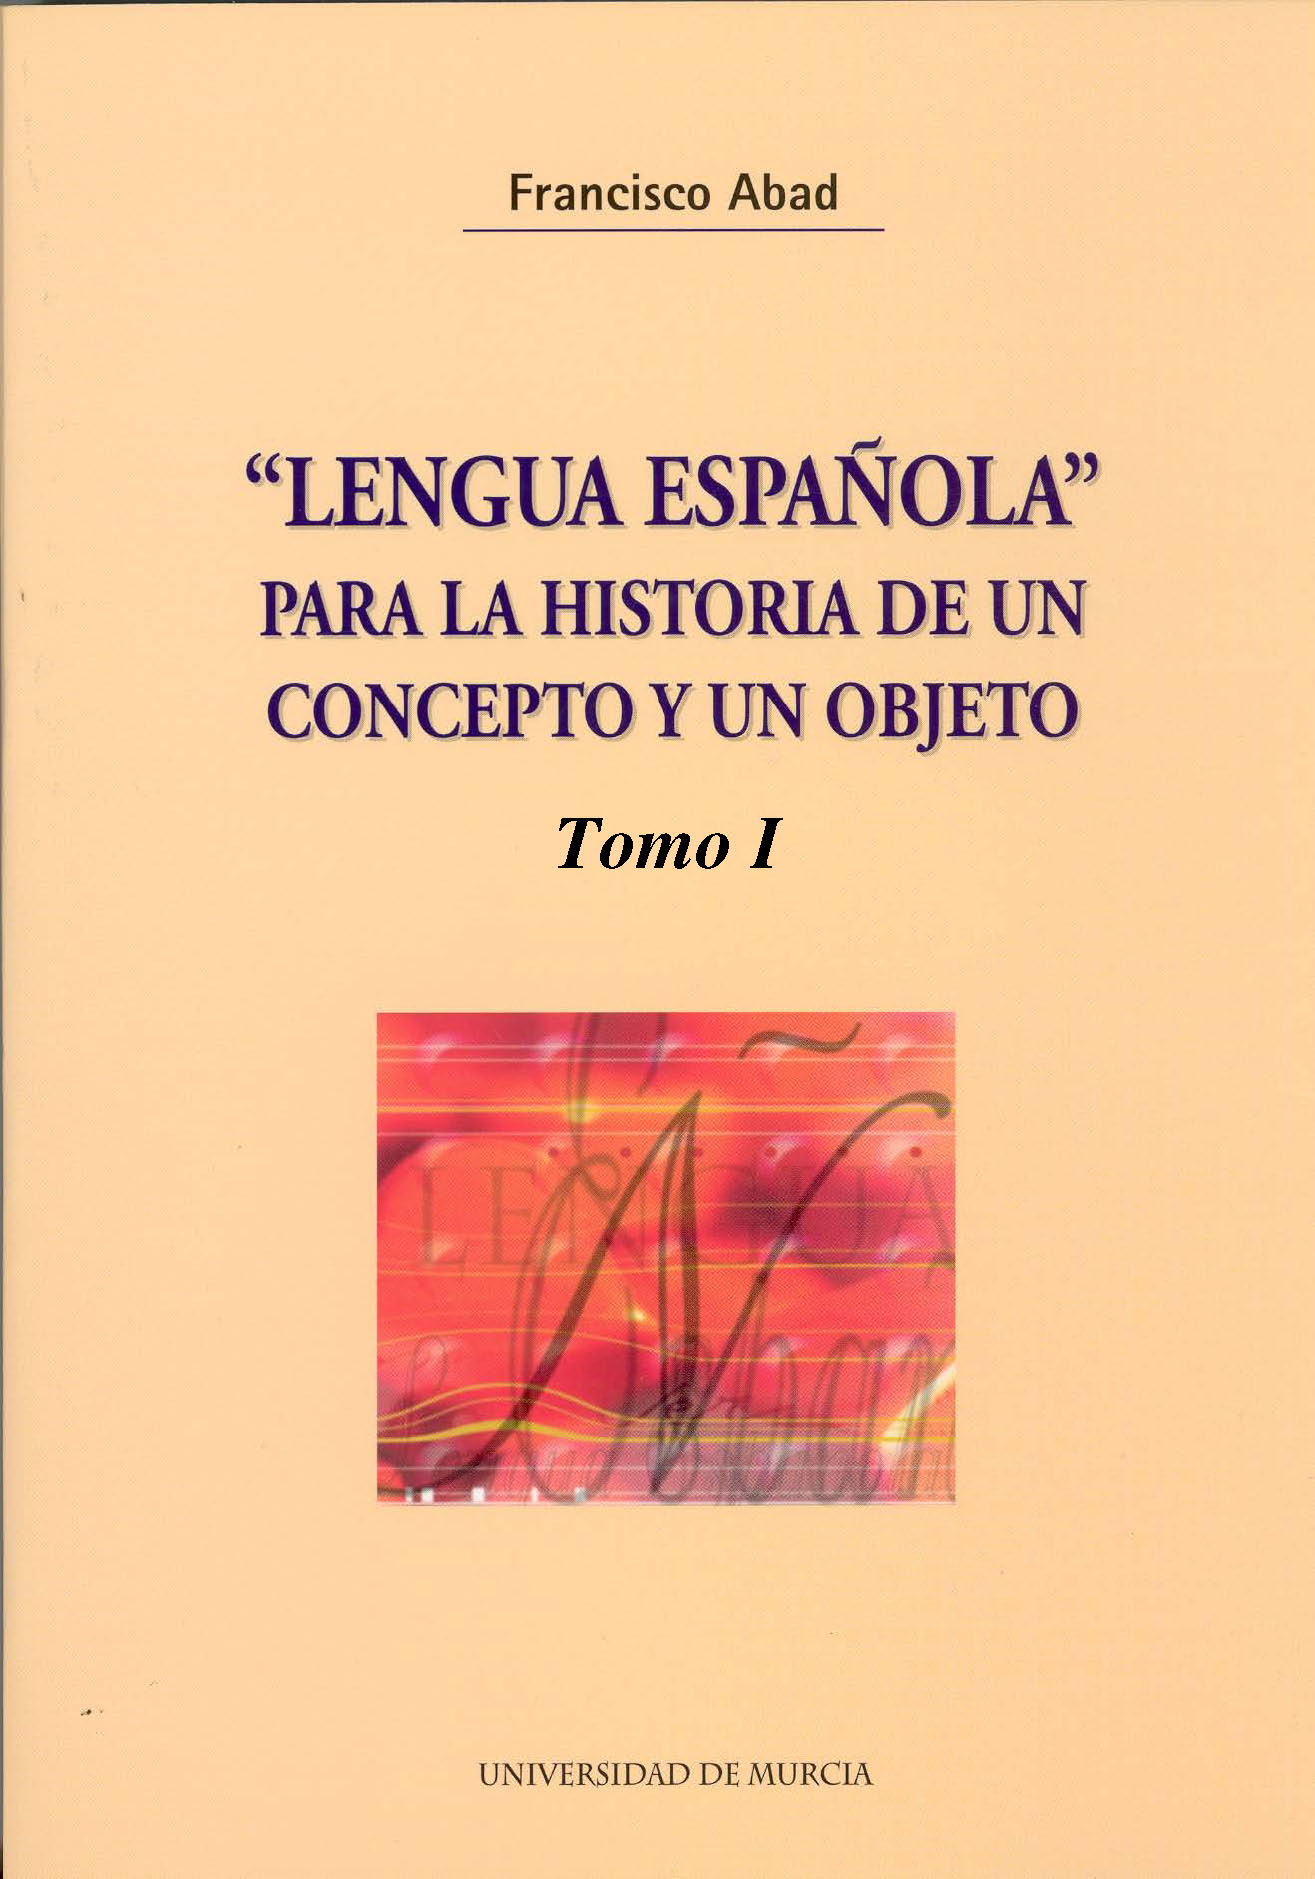 Imagen de portada del libro "Lengua española" para la historia de un concepto y un objeto